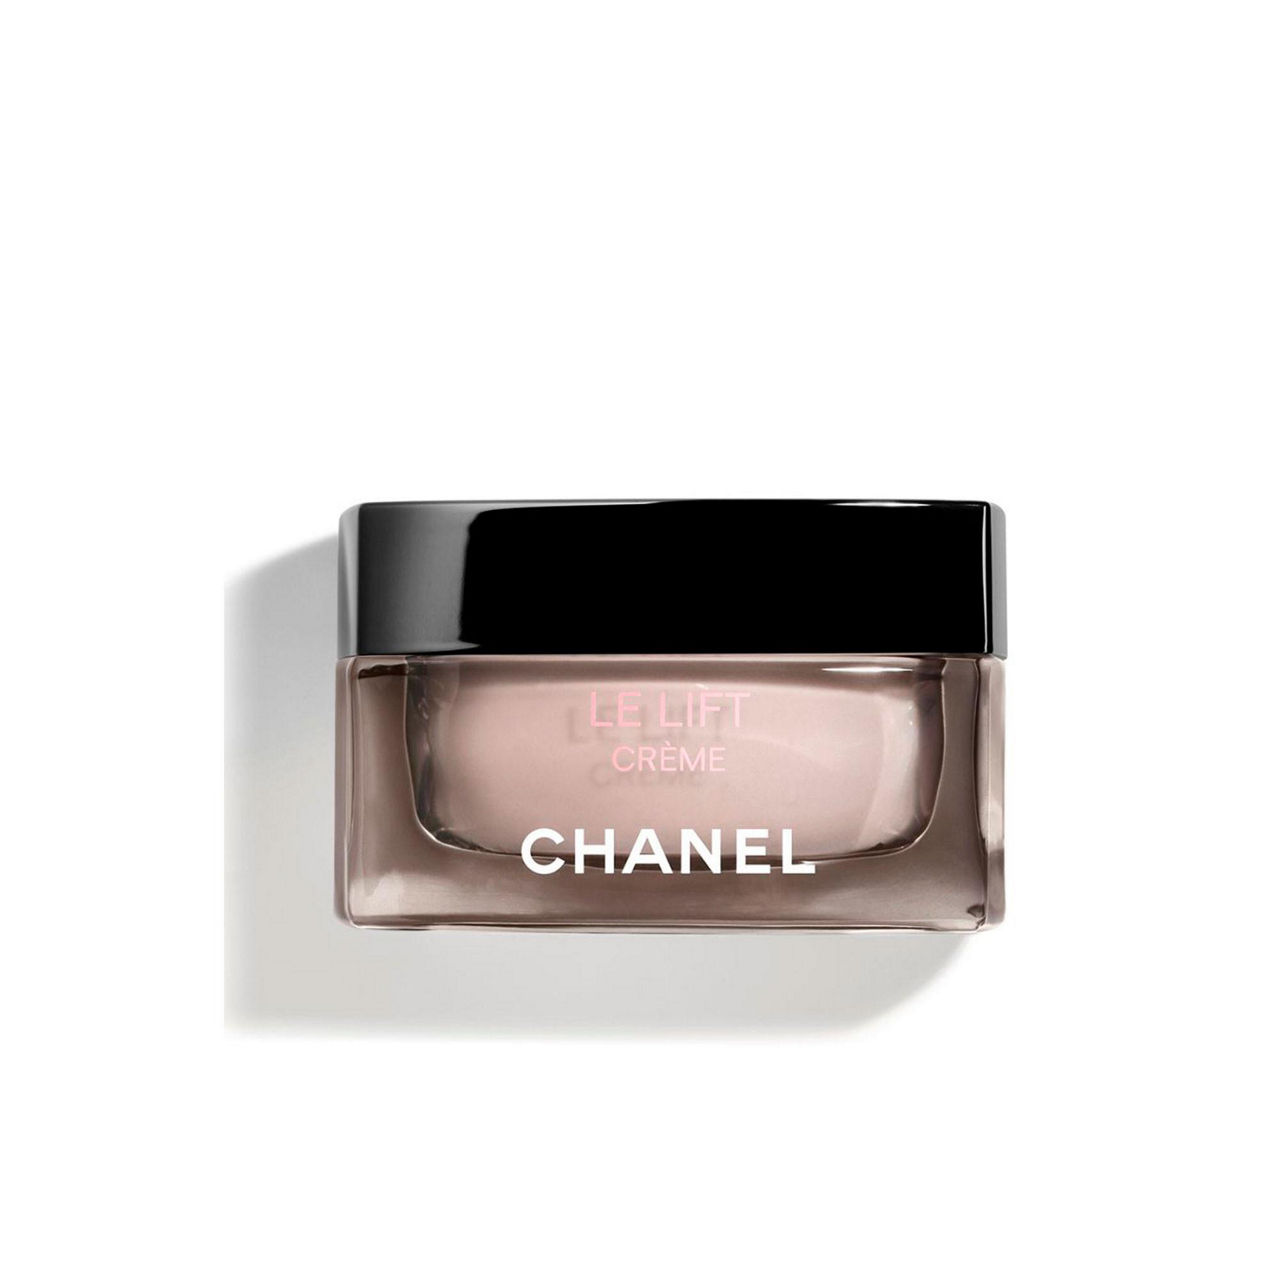 Chanel Le Lift Pro Contour Concentrate 50 ml